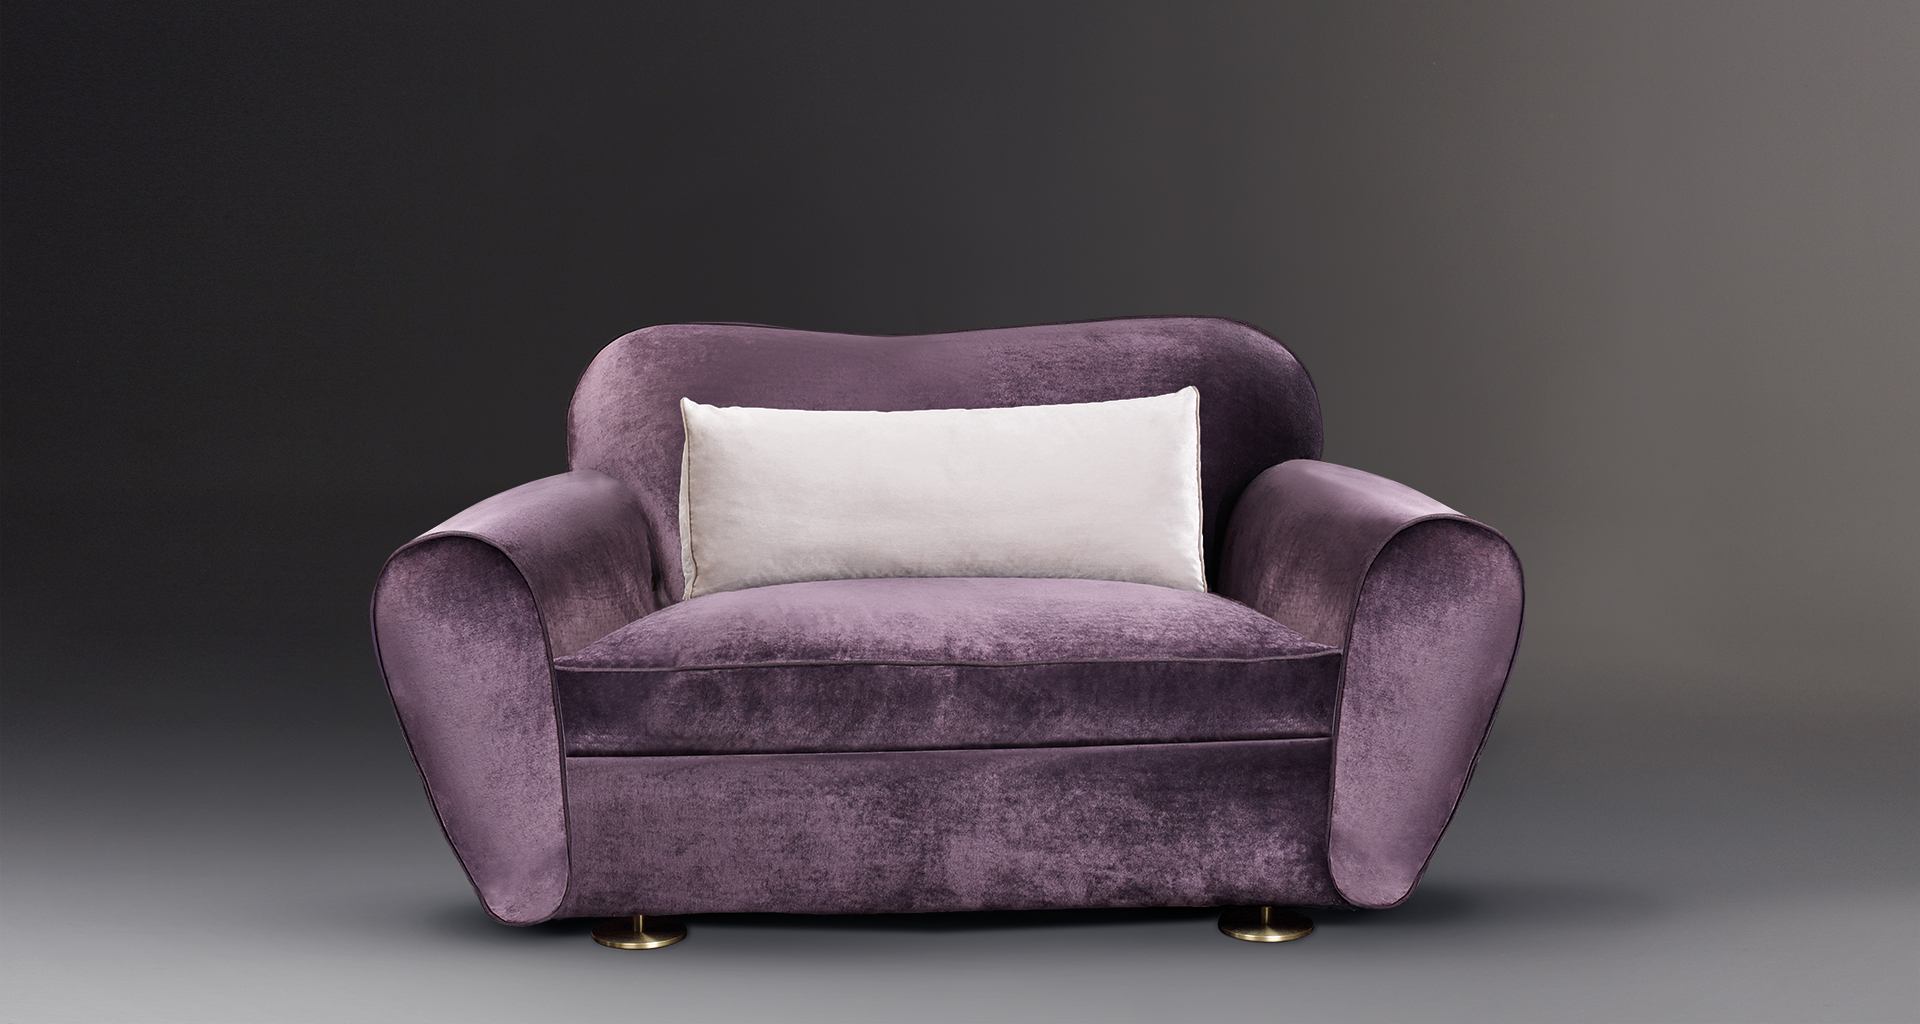 Artù è un divano rivestito in tessuto con piedini in bronzo, del catalogo di Promemoria | Promemoria